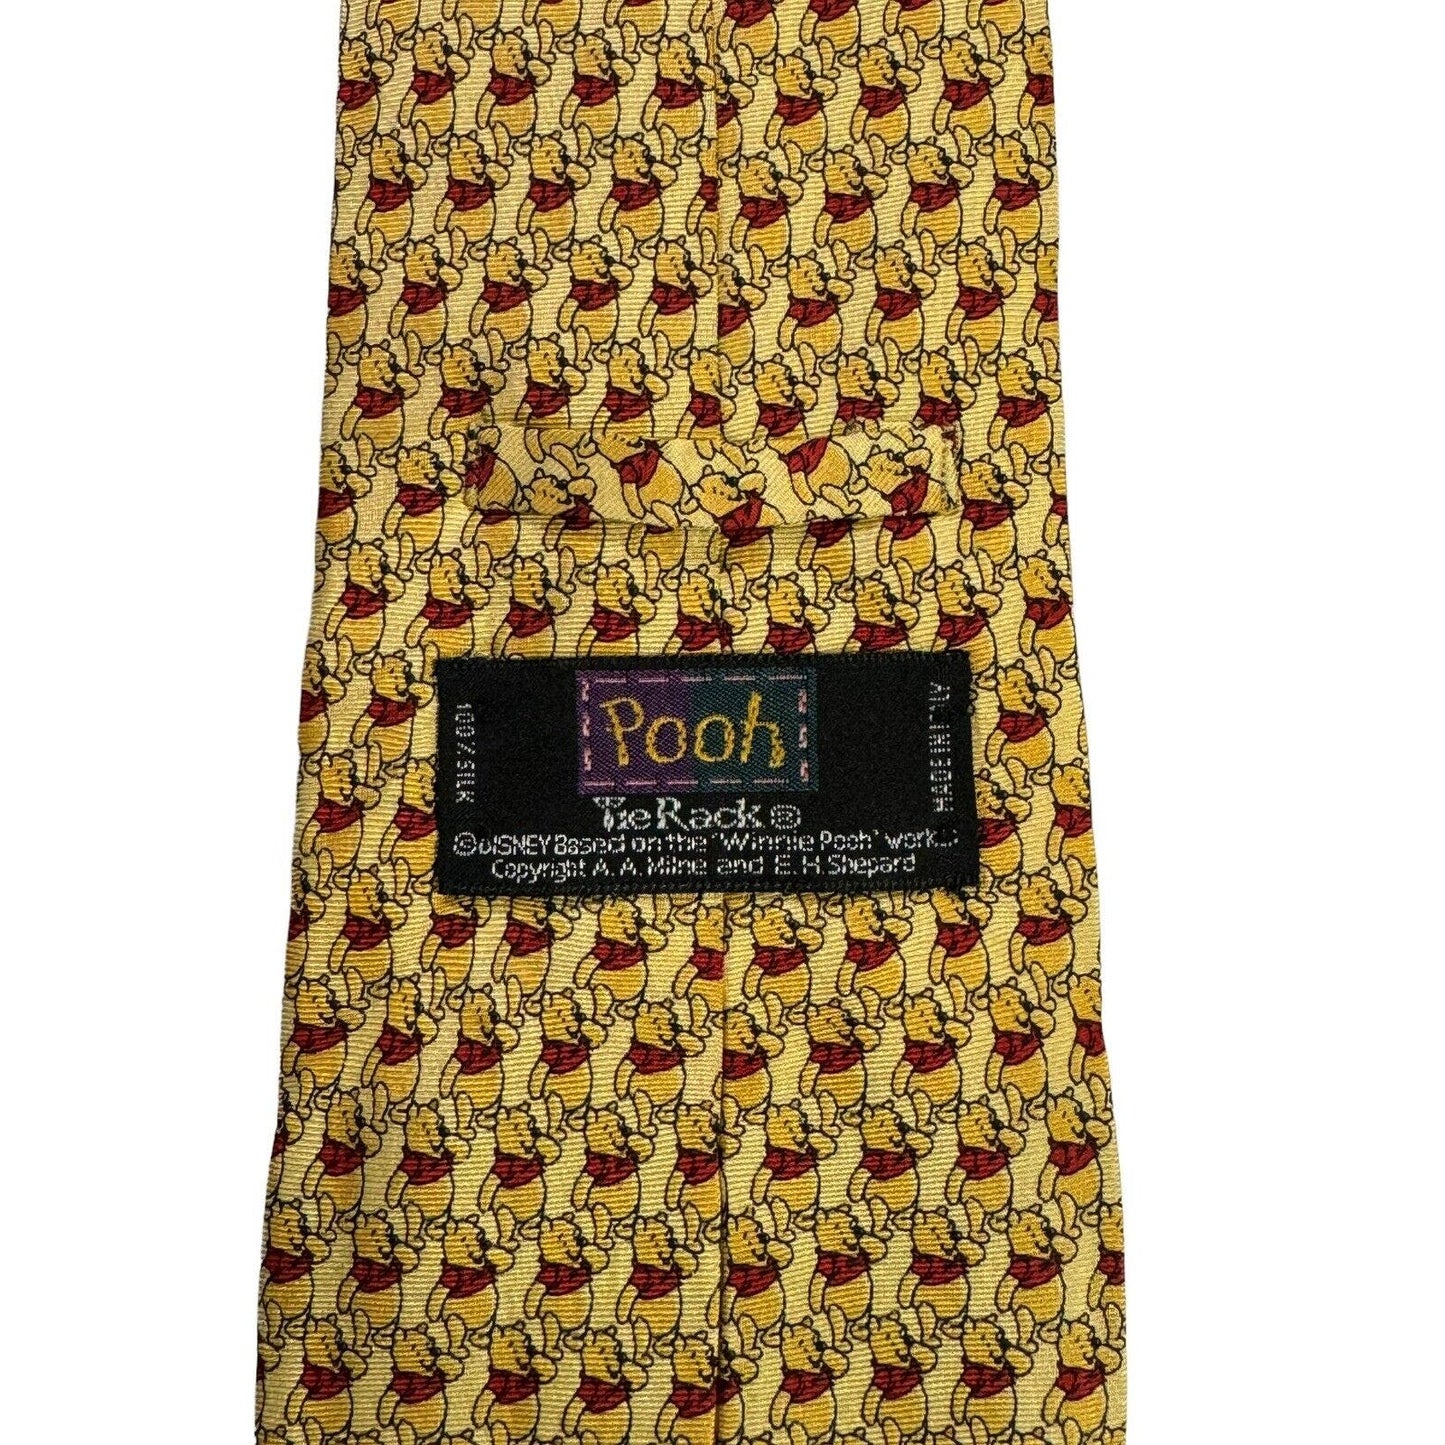 Disney Tie Rack Winnie The Pooh Pattern Cartoon Novelty Necktie Vintage Silk